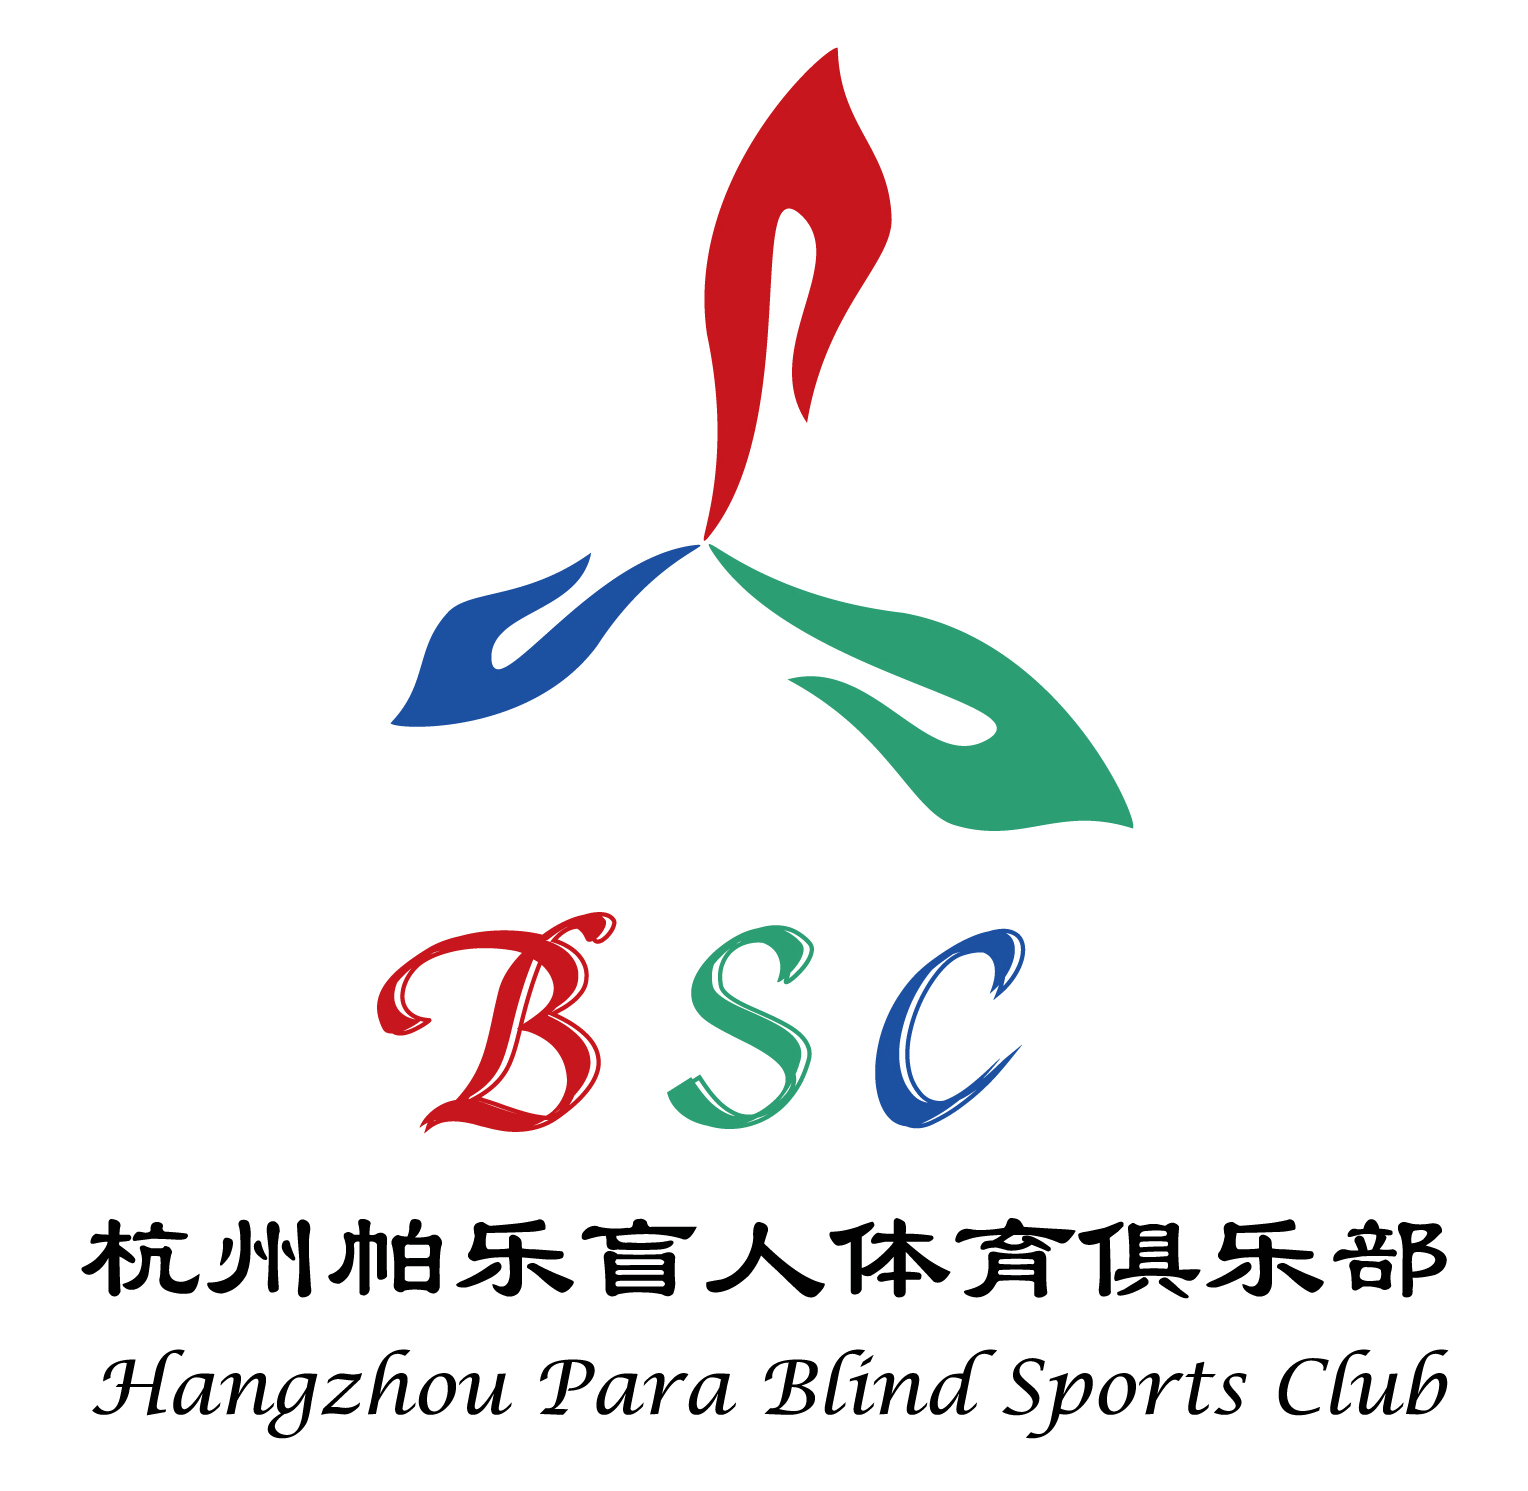 杭州帕乐盲人体育俱乐部